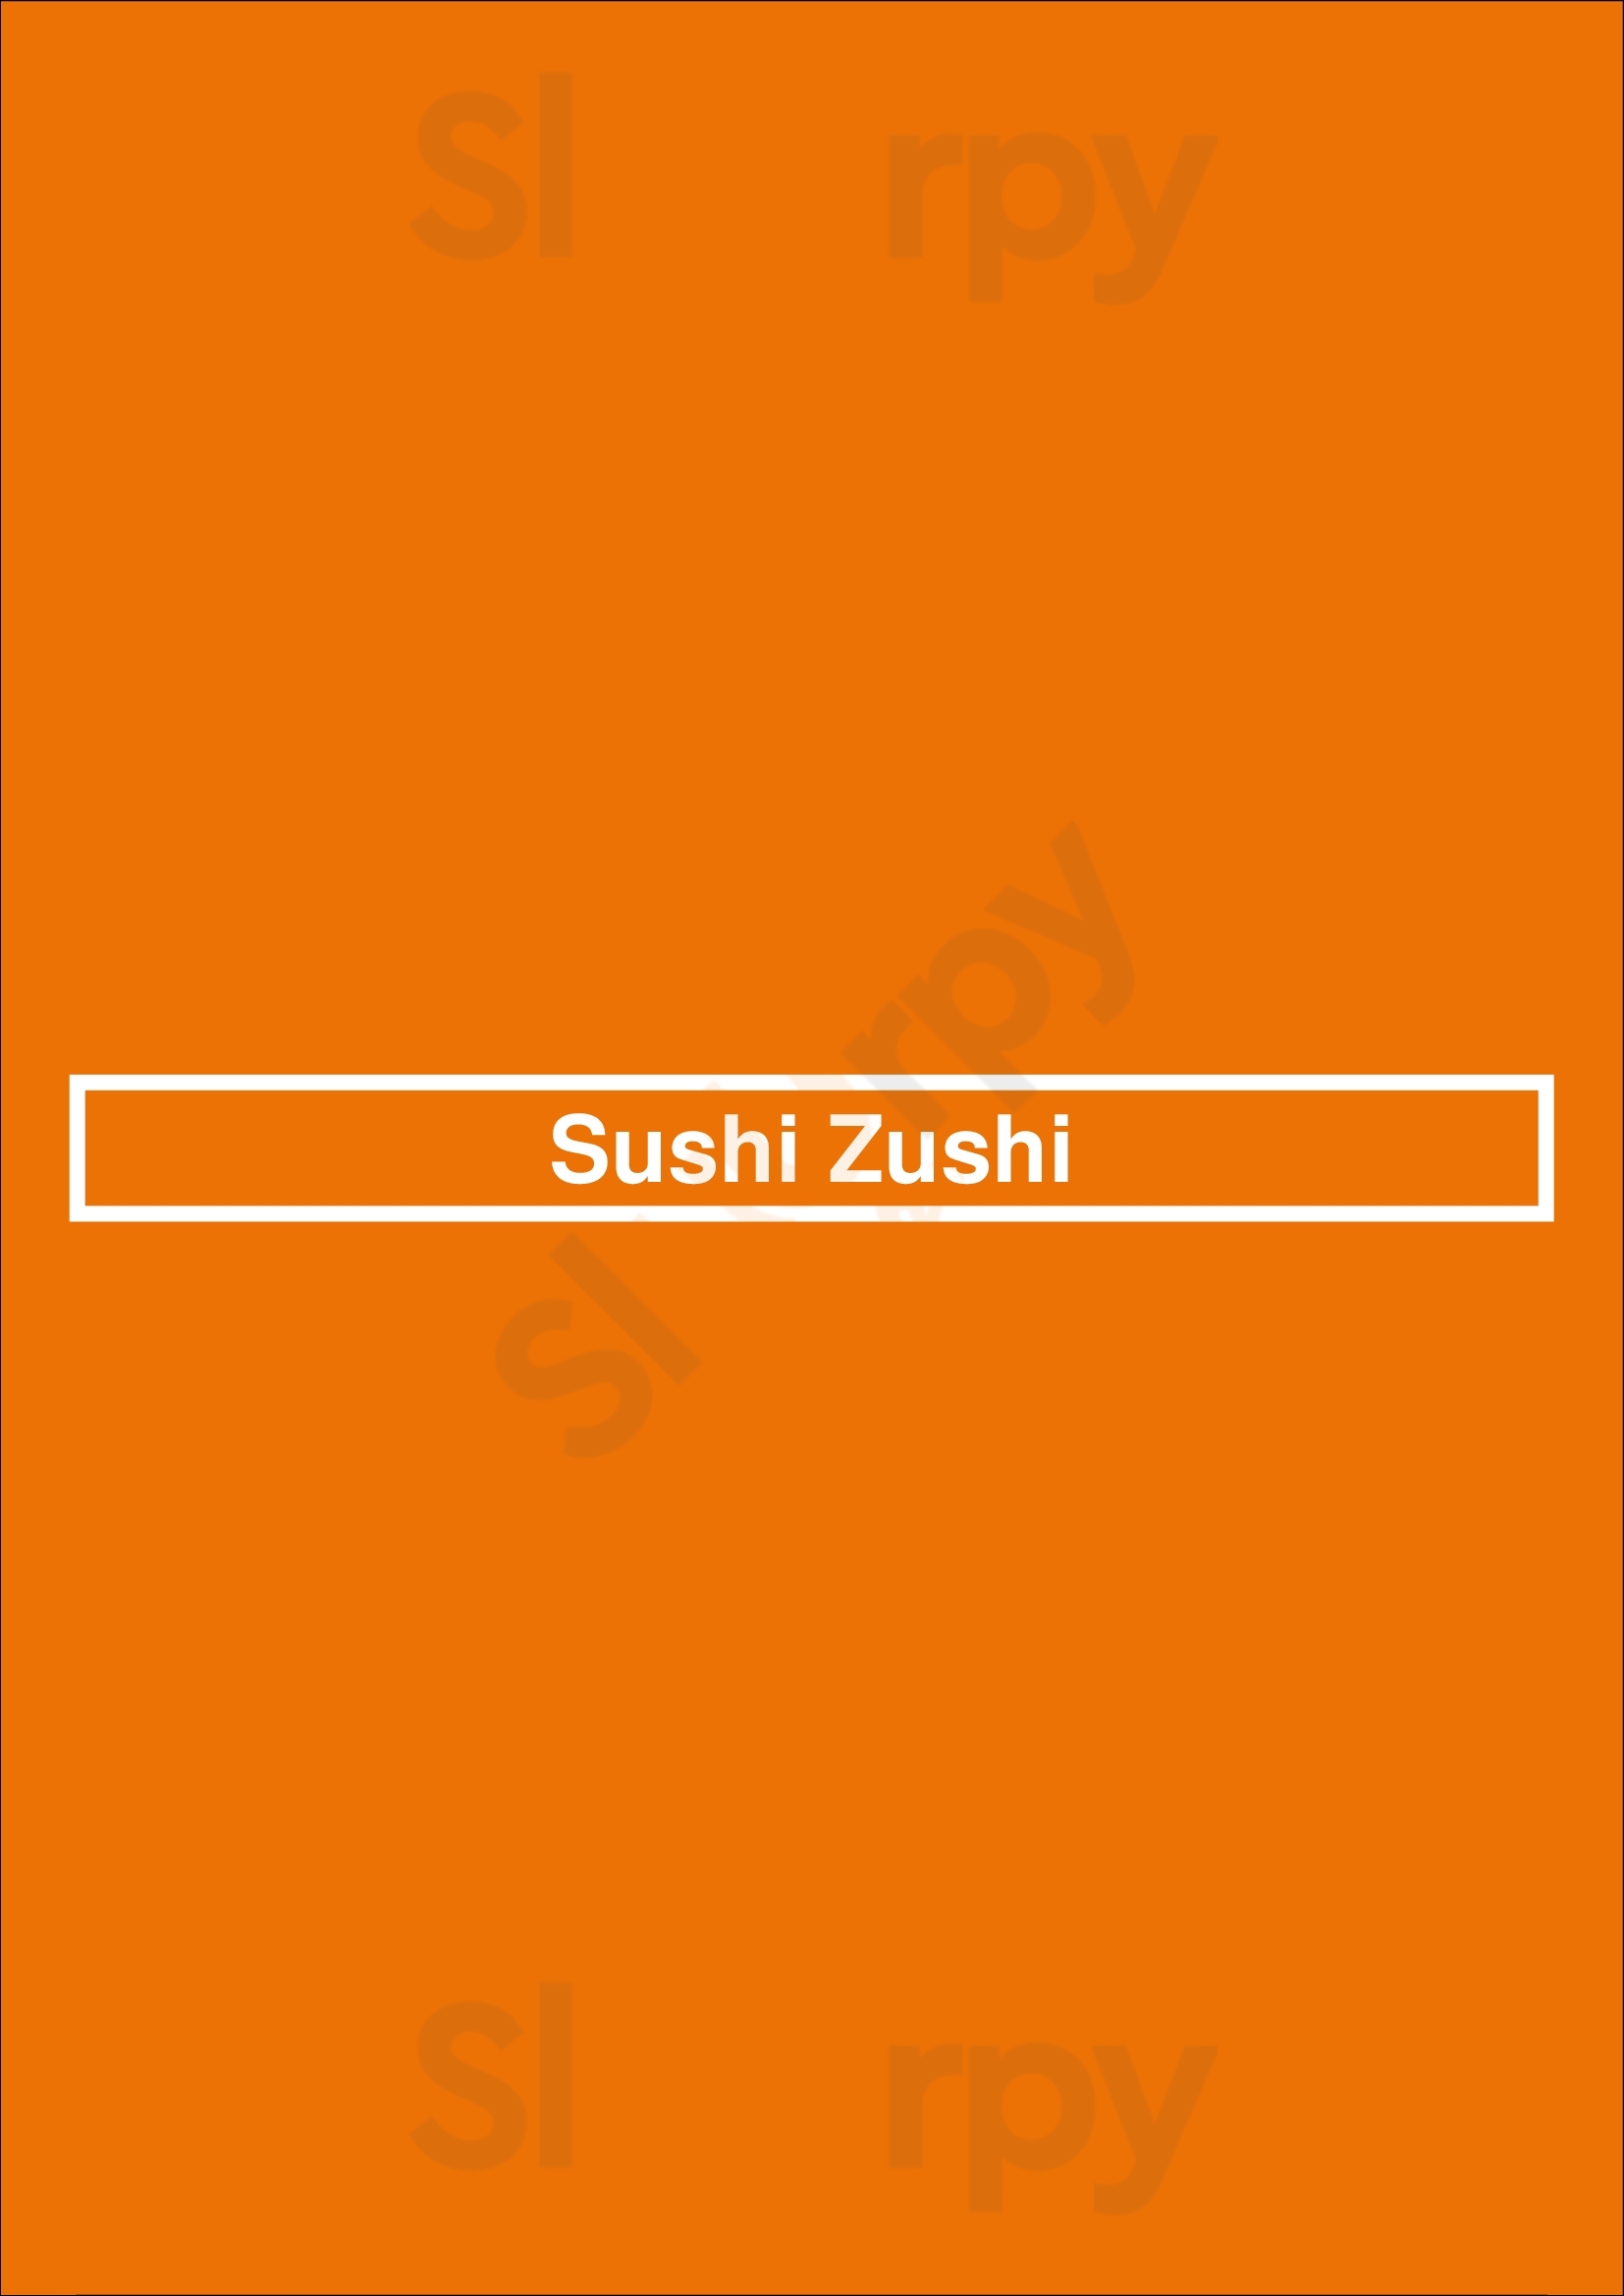 Sushi Zushi San Antonio Menu - 1